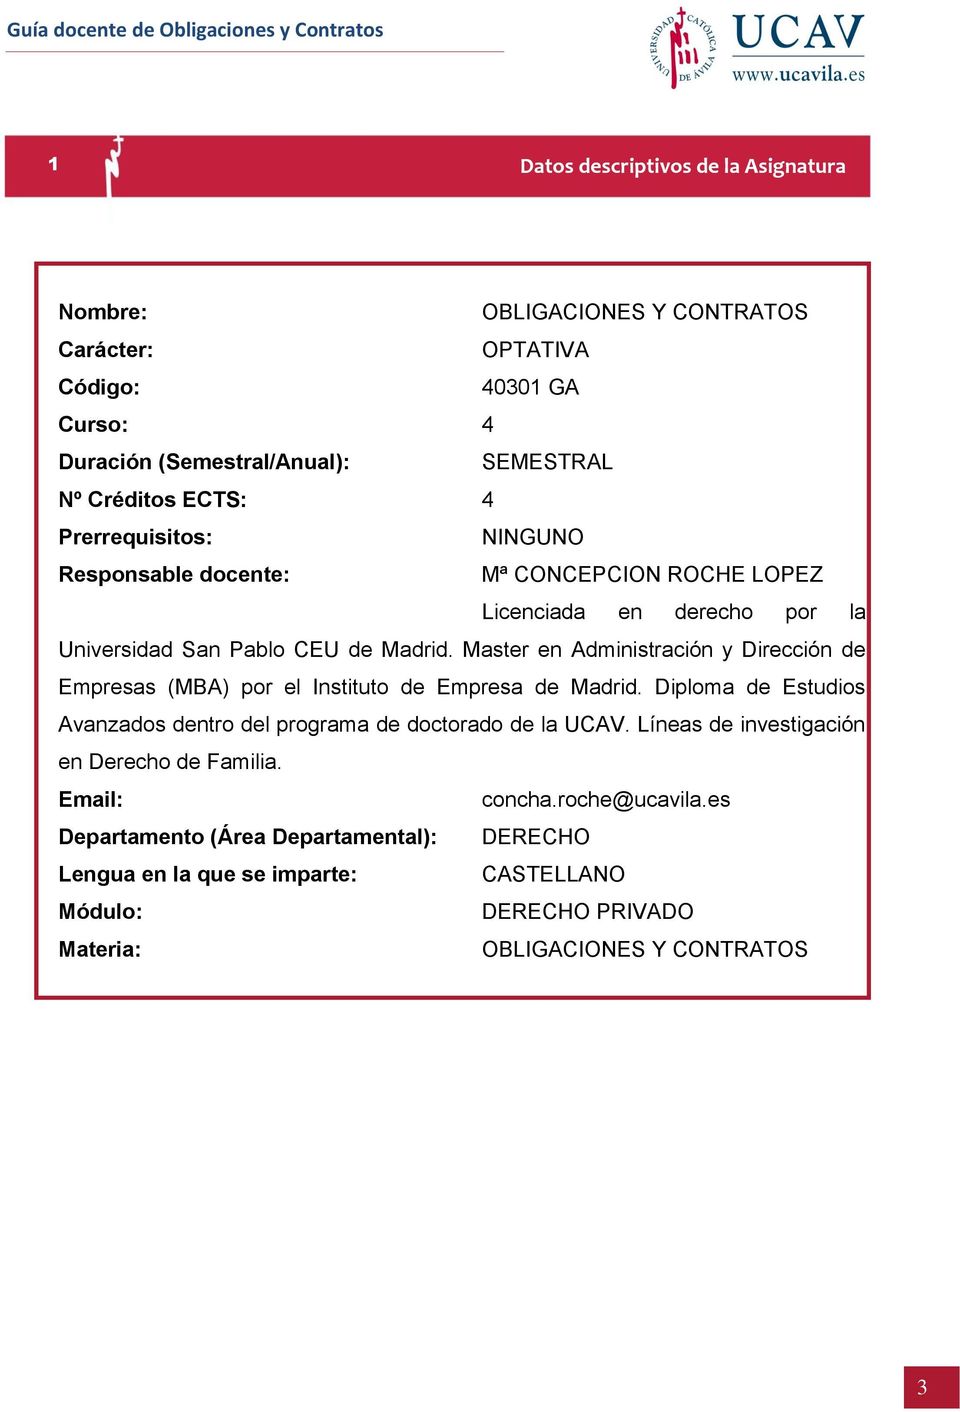 Master en Administración y Dirección de Empresas (MBA) por el Instituto de Empresa de Madrid. Diploma de Estudios Avanzados dentro del programa de doctorado de la UCAV.